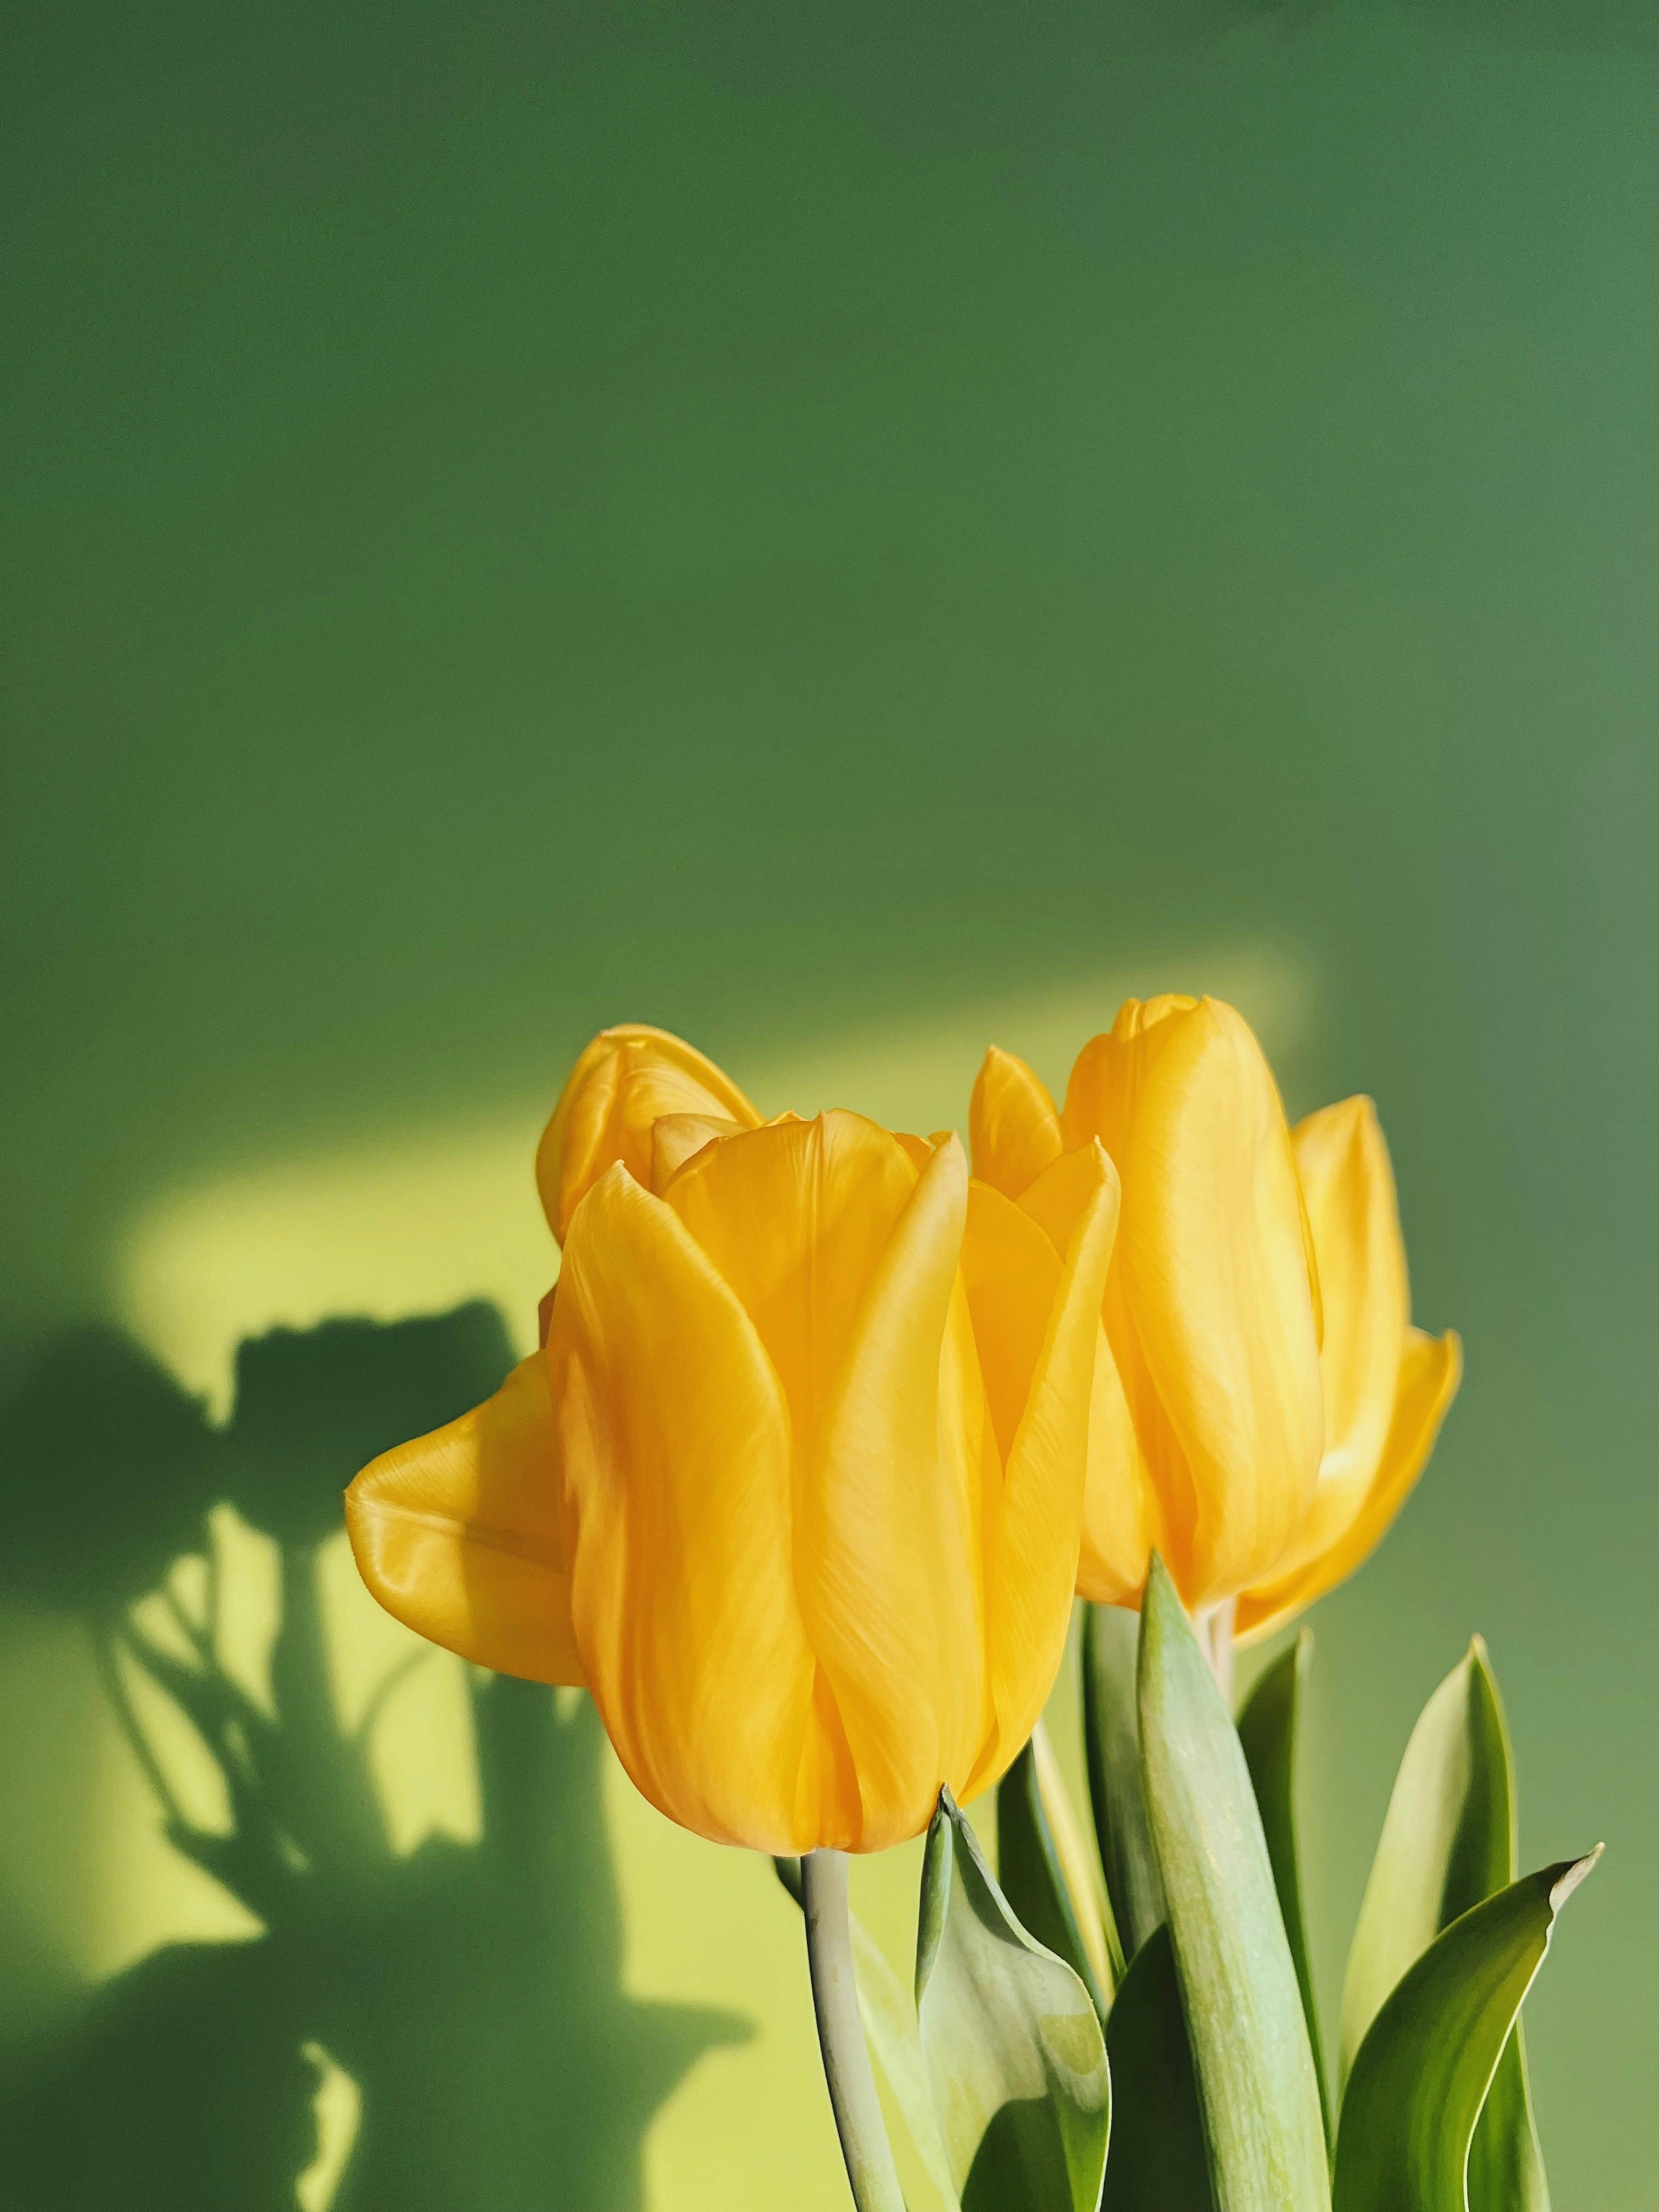 Ảnh đẹp về hoa tulip mang đến cho bạn cảm giác nhẹ nhàng, thư thái như đang đắm mình trong một khu vườn bao la. Với những bông hoa hạnh phúc này, bạn sẽ không thể rời mắt khỏi hình ảnh đầy ấn tượng. Hãy xem ngay để cảm nhận thêm nét đẹp thần tiên của hoa tulip!